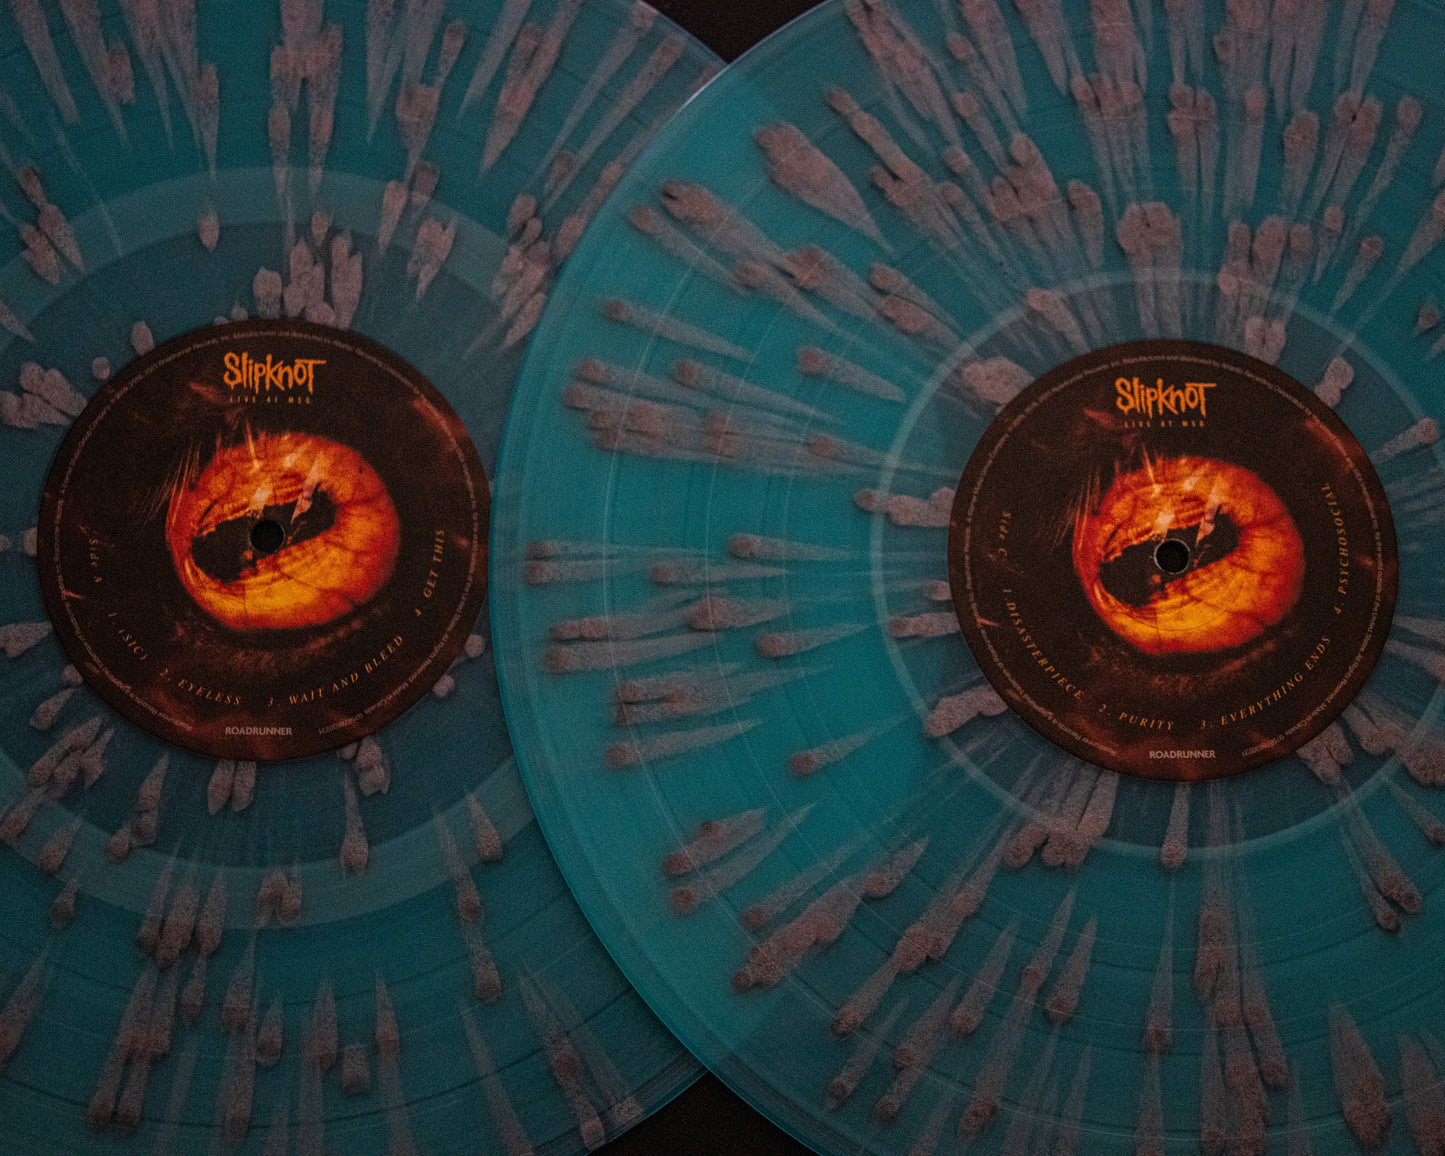 Slipknot "Live At MSG" Vinyl in Light Blue